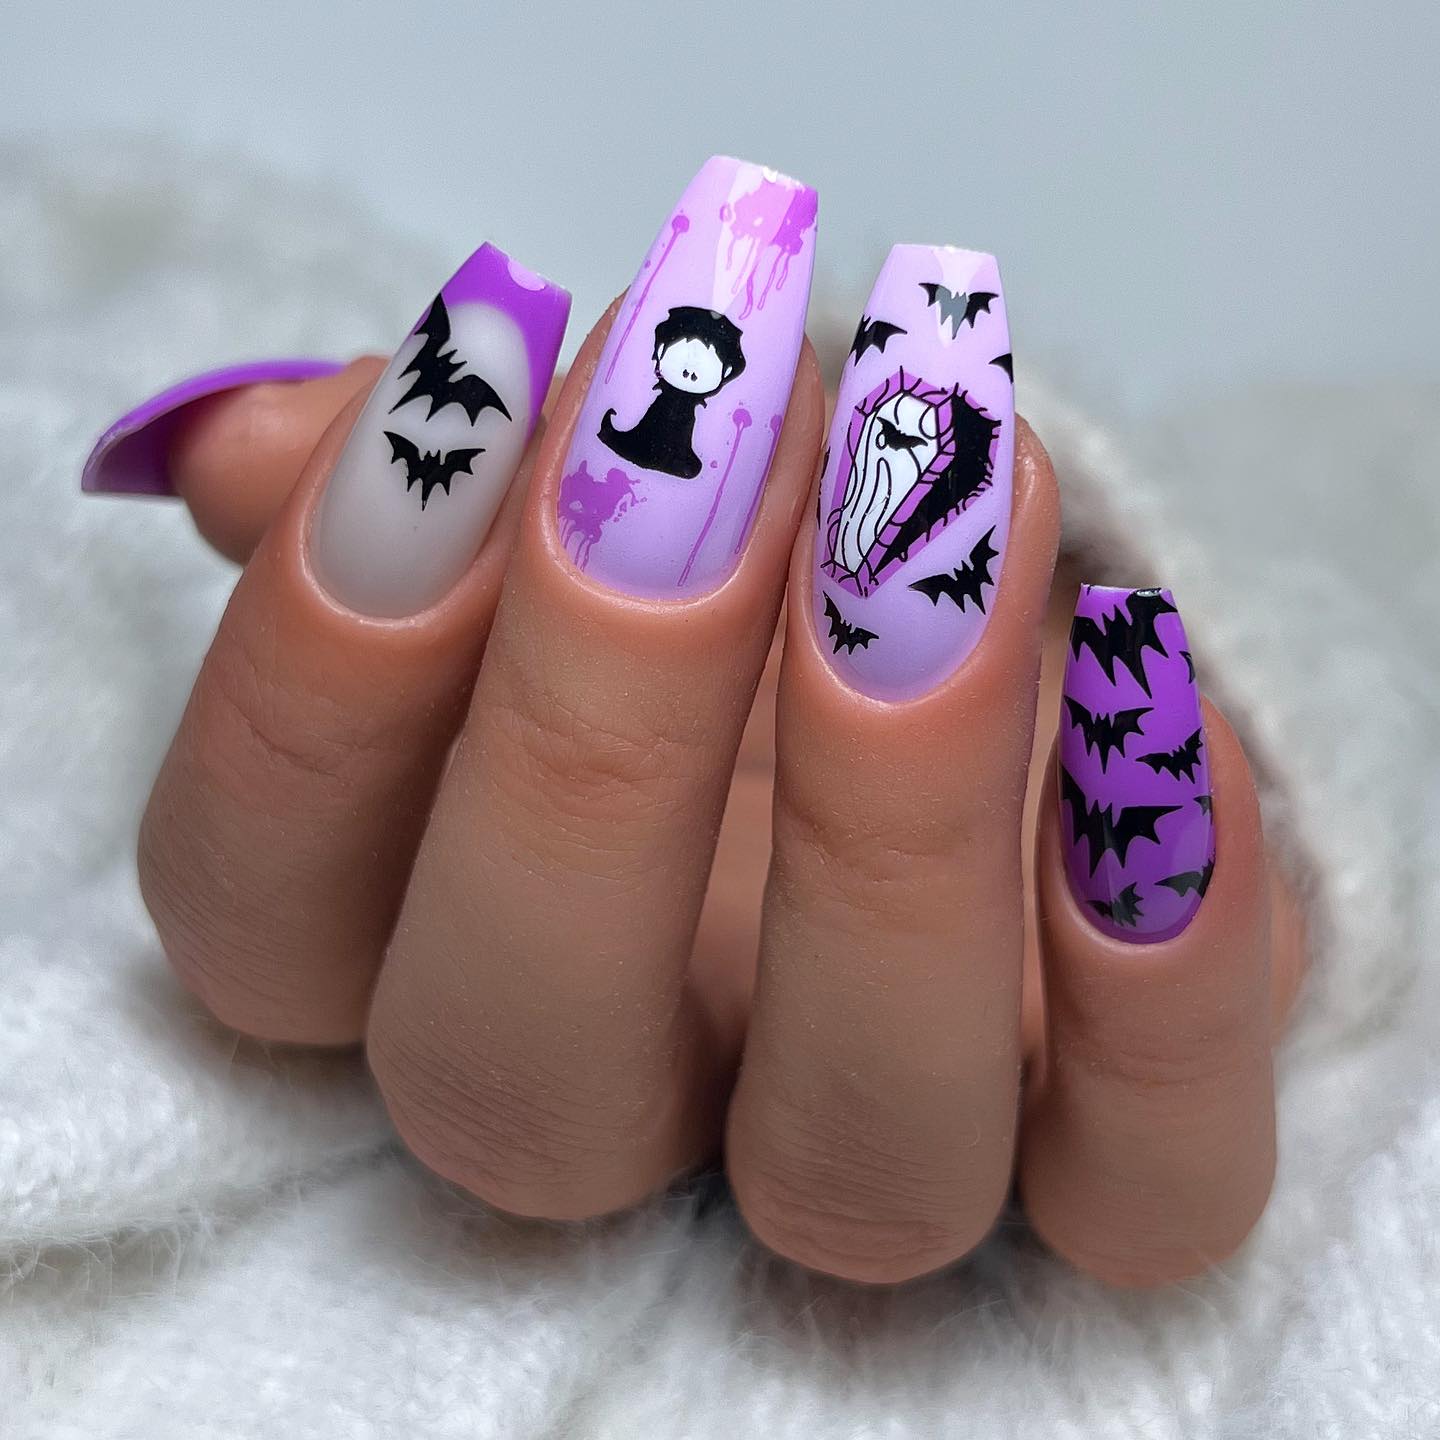 Kolejny przykład paznokci z motywem Halloween w kolorach fioletowym i czarnym z magicznymi kwiatami, księżycami, duchami, trumnami i czaszkami